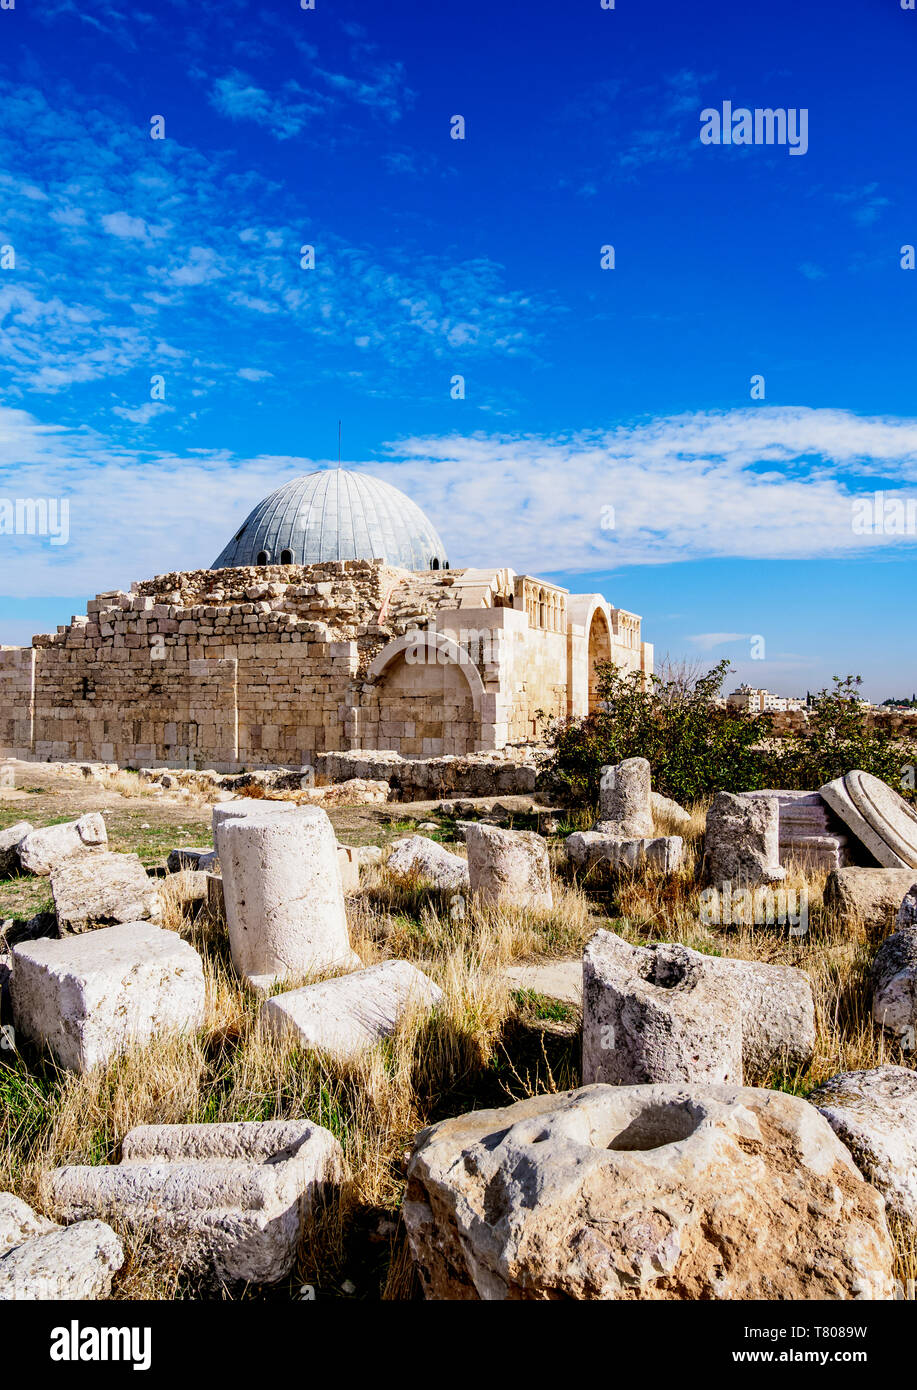 Umayyad Palace, Amman Citadel, Amman Governorate, Jordan, Middle East Stock Photo